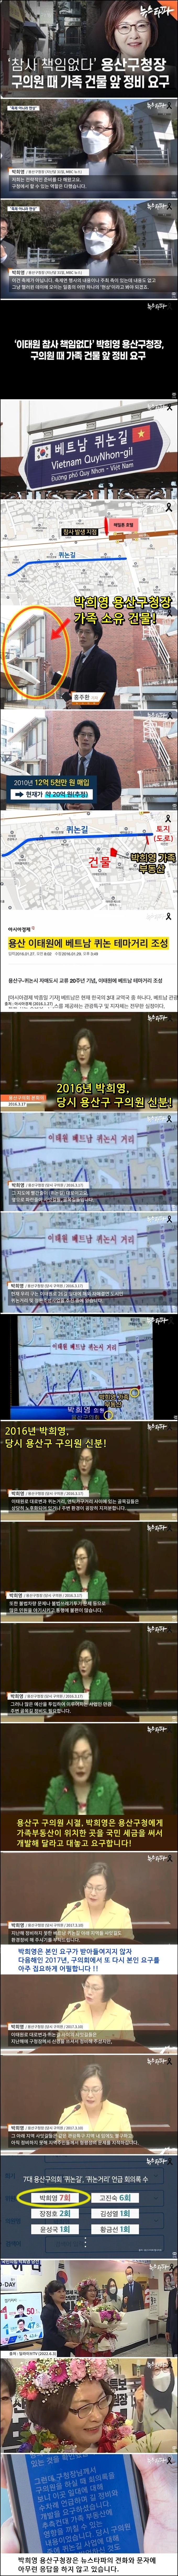 박희영 용산구청장, 구의원 시절 가족 건물 앞 정비 요구.jpg